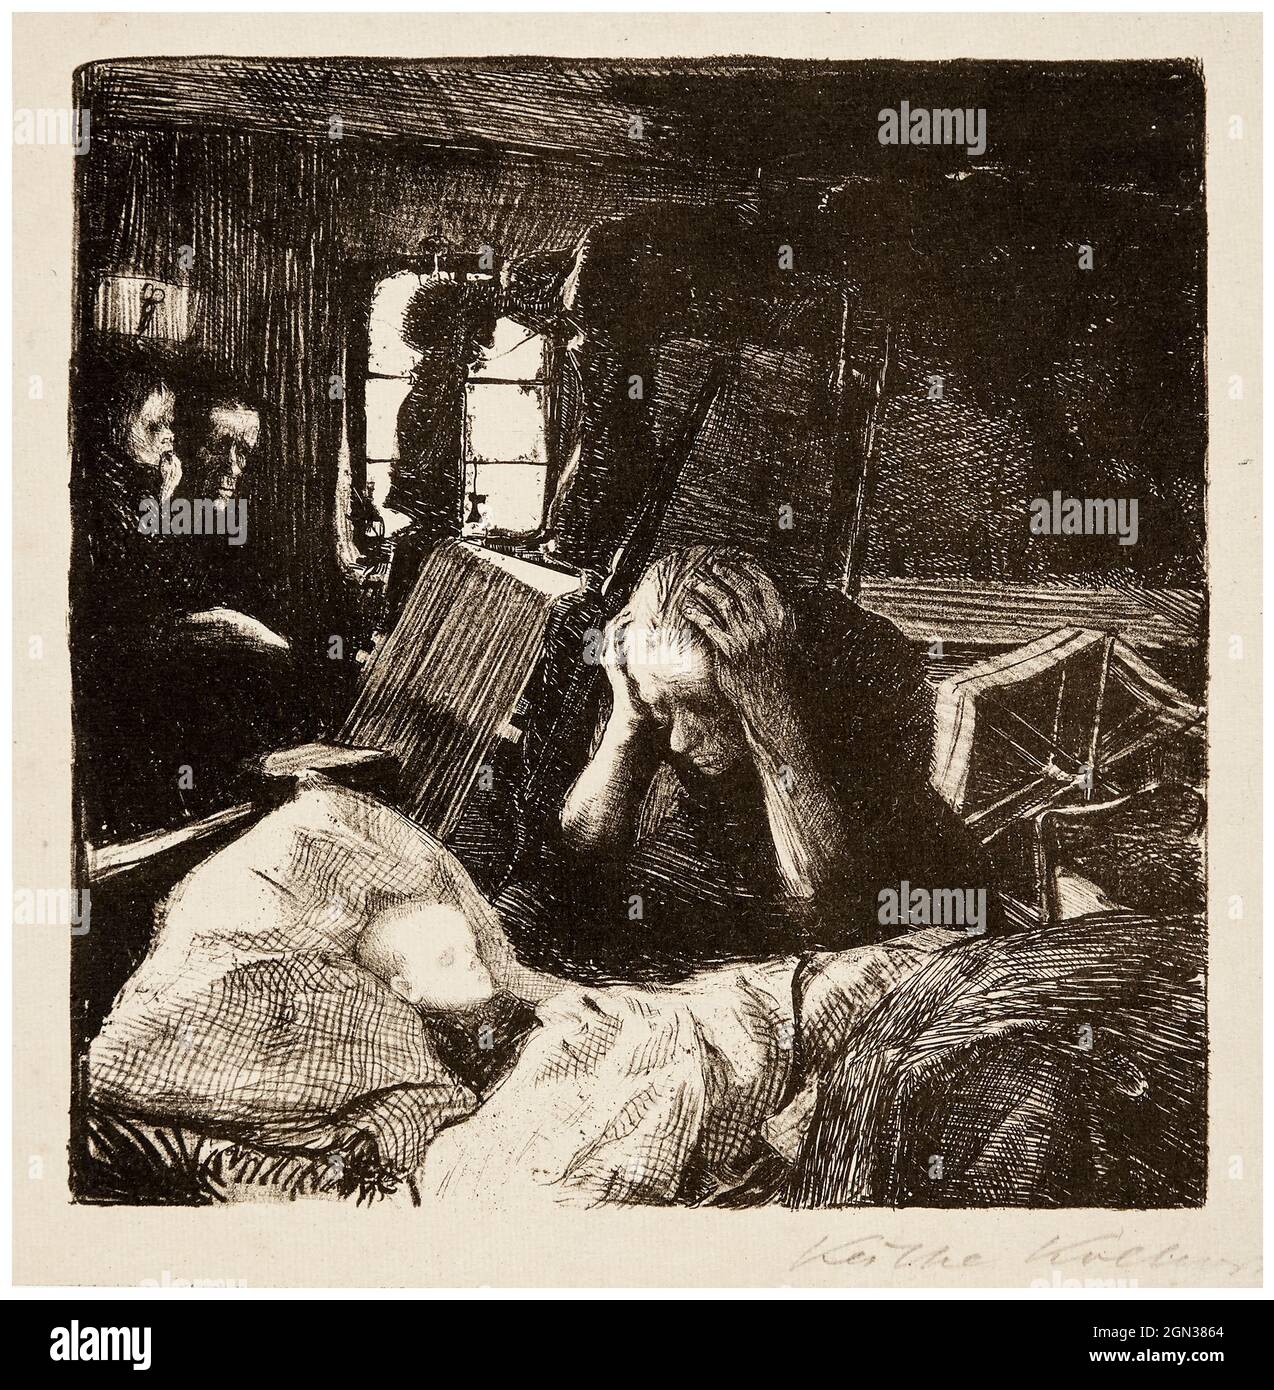 Käthe Kollwitz, Distress, ('Not'), etching, 1897-1898 from the series Ein Weberaufstand (A Weavers’ Revolt) Stock Photo